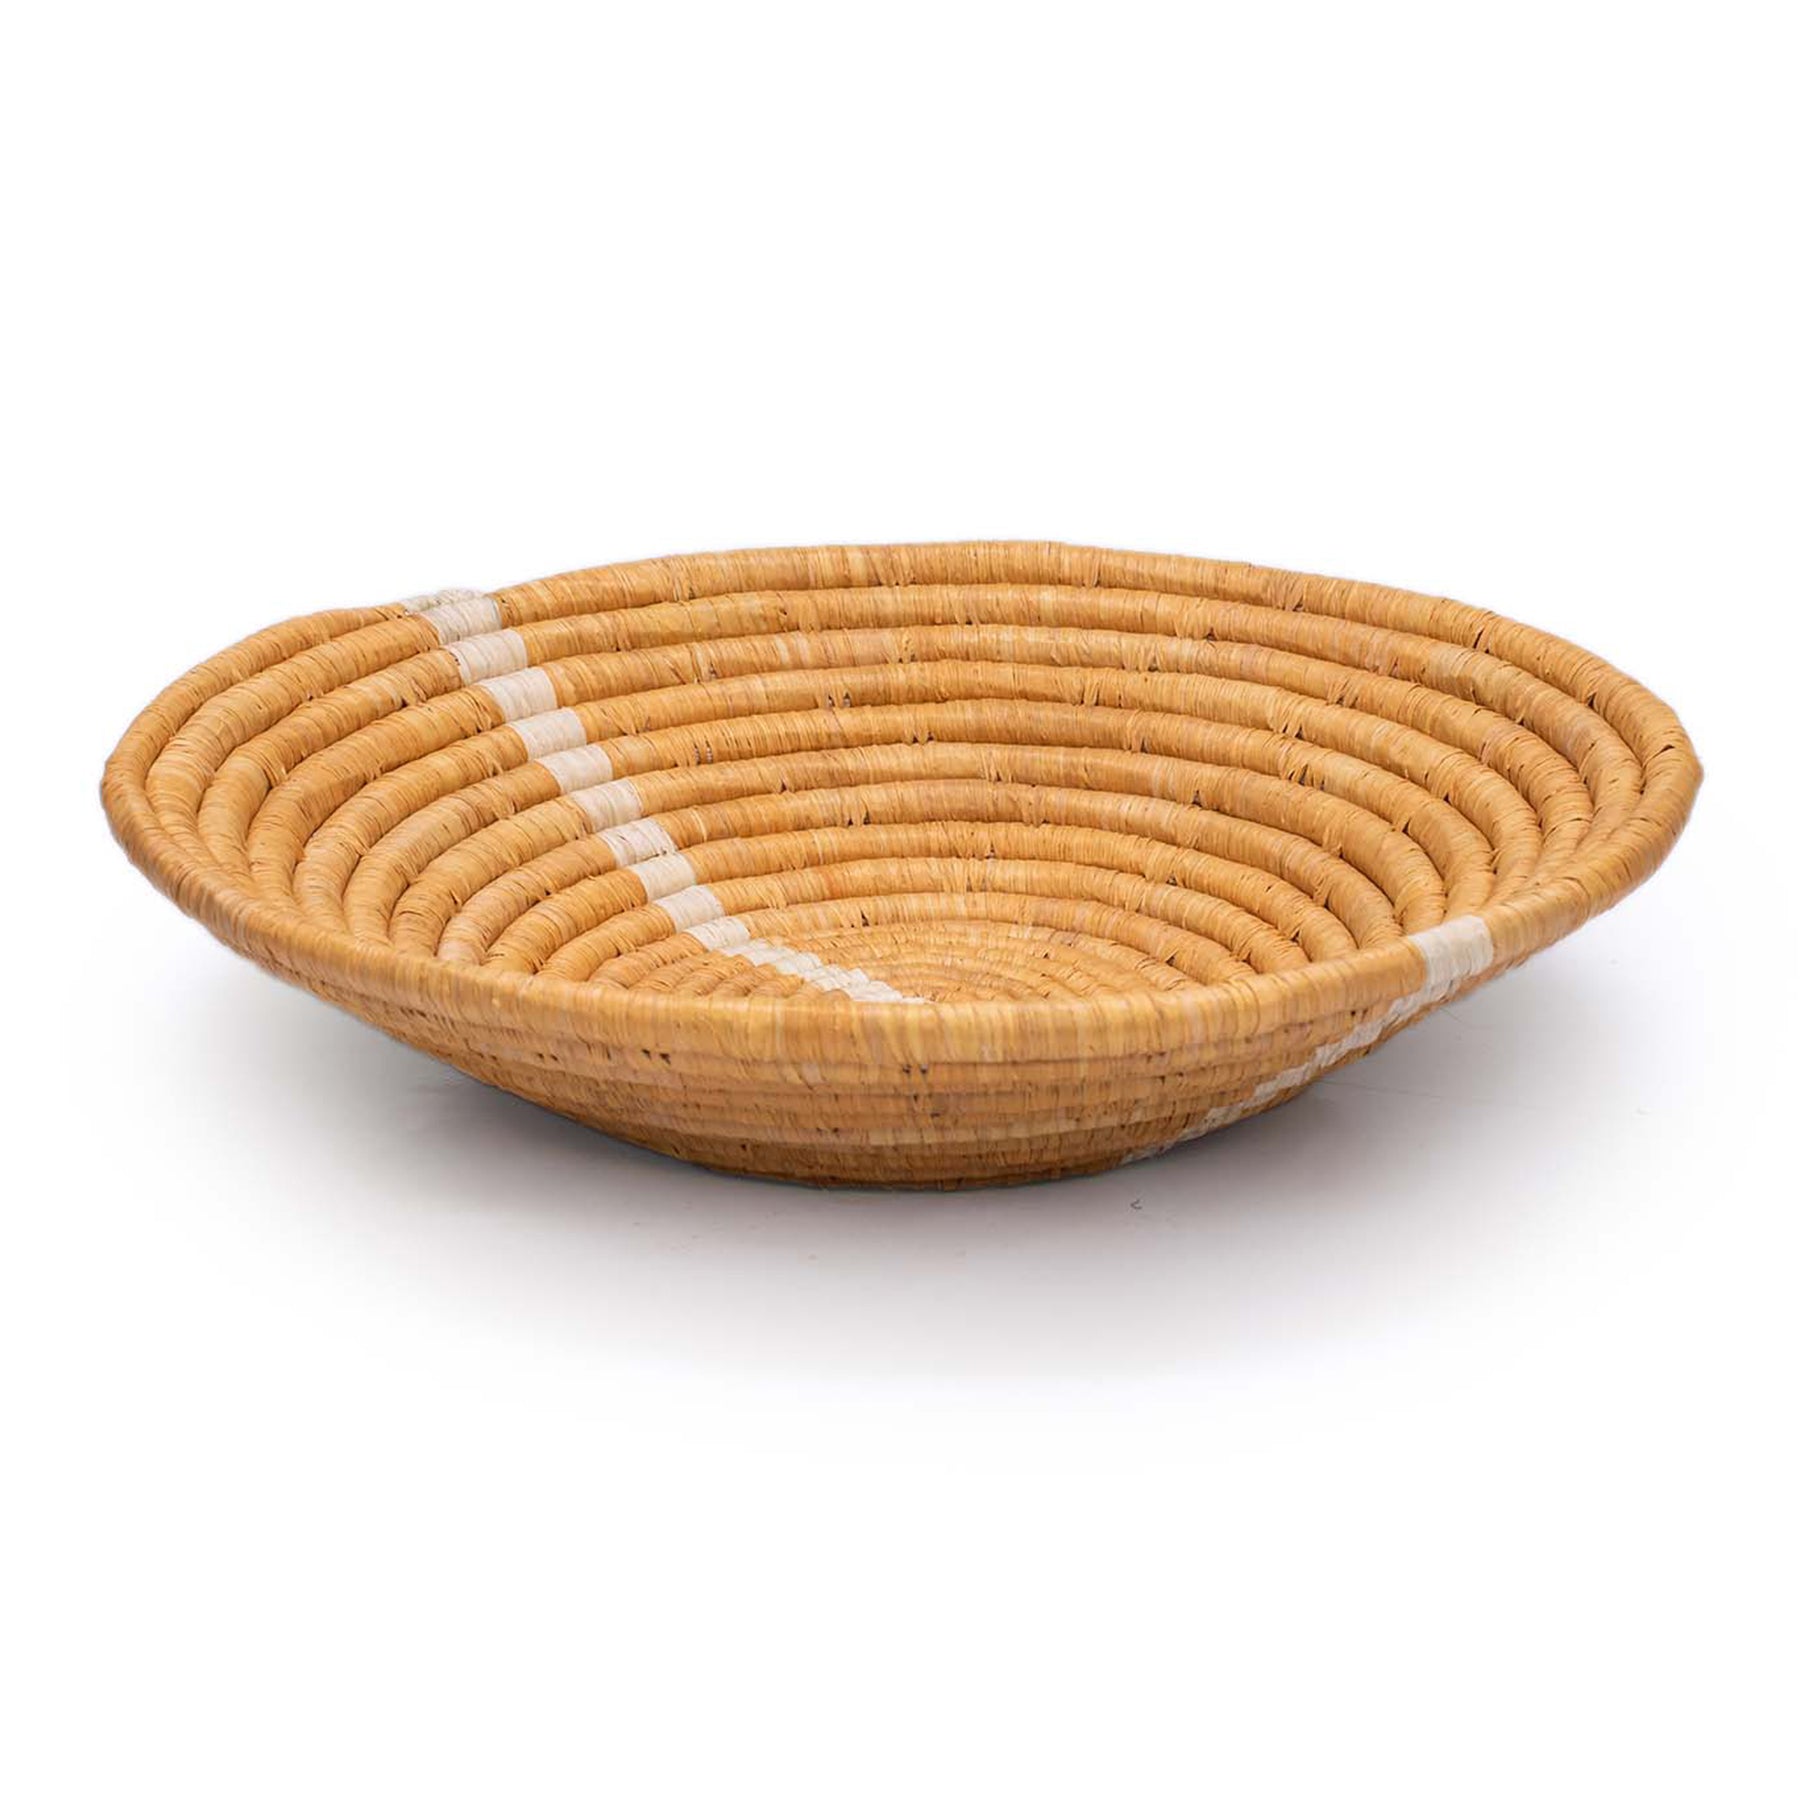  Neutral Woven Bowl - 12" Striped Tan by Kazi Goods - Wholesale Kazi Goods - Wholesale Perfumarie